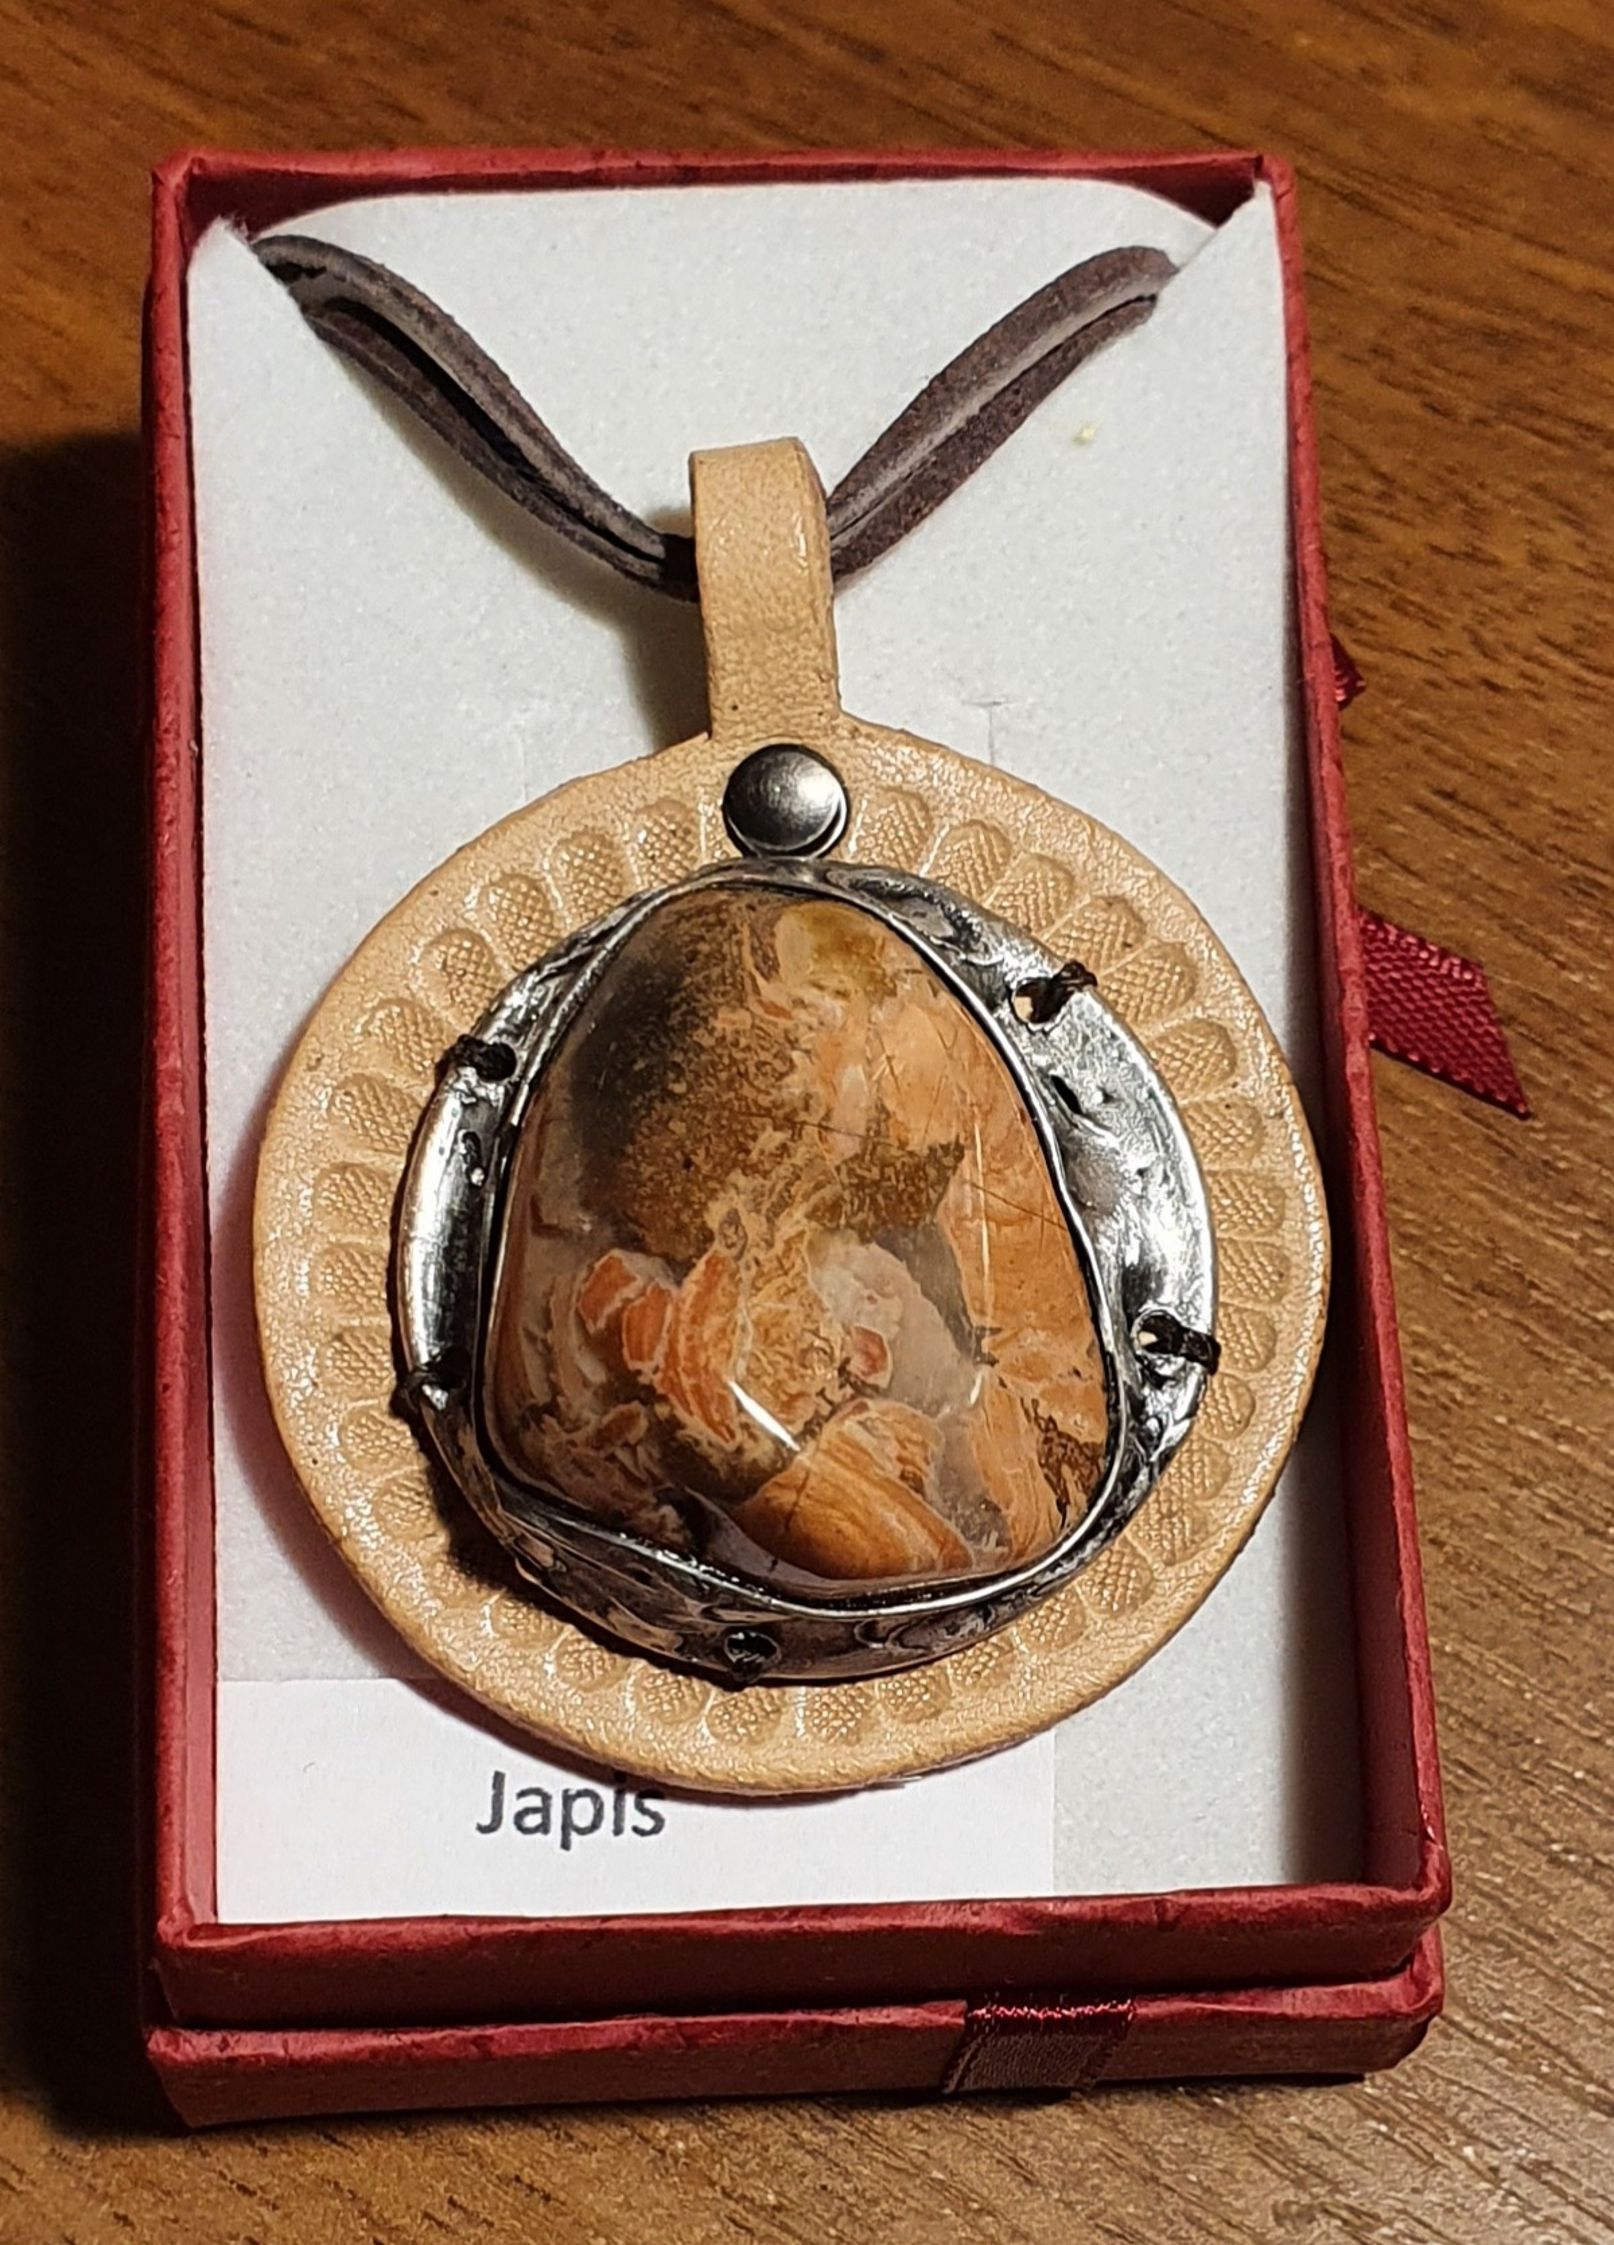 Náhrdelník - autorský  cínovaný šperk s Jaspisem na kůži(4,5x4cm), cena 600 Kč.